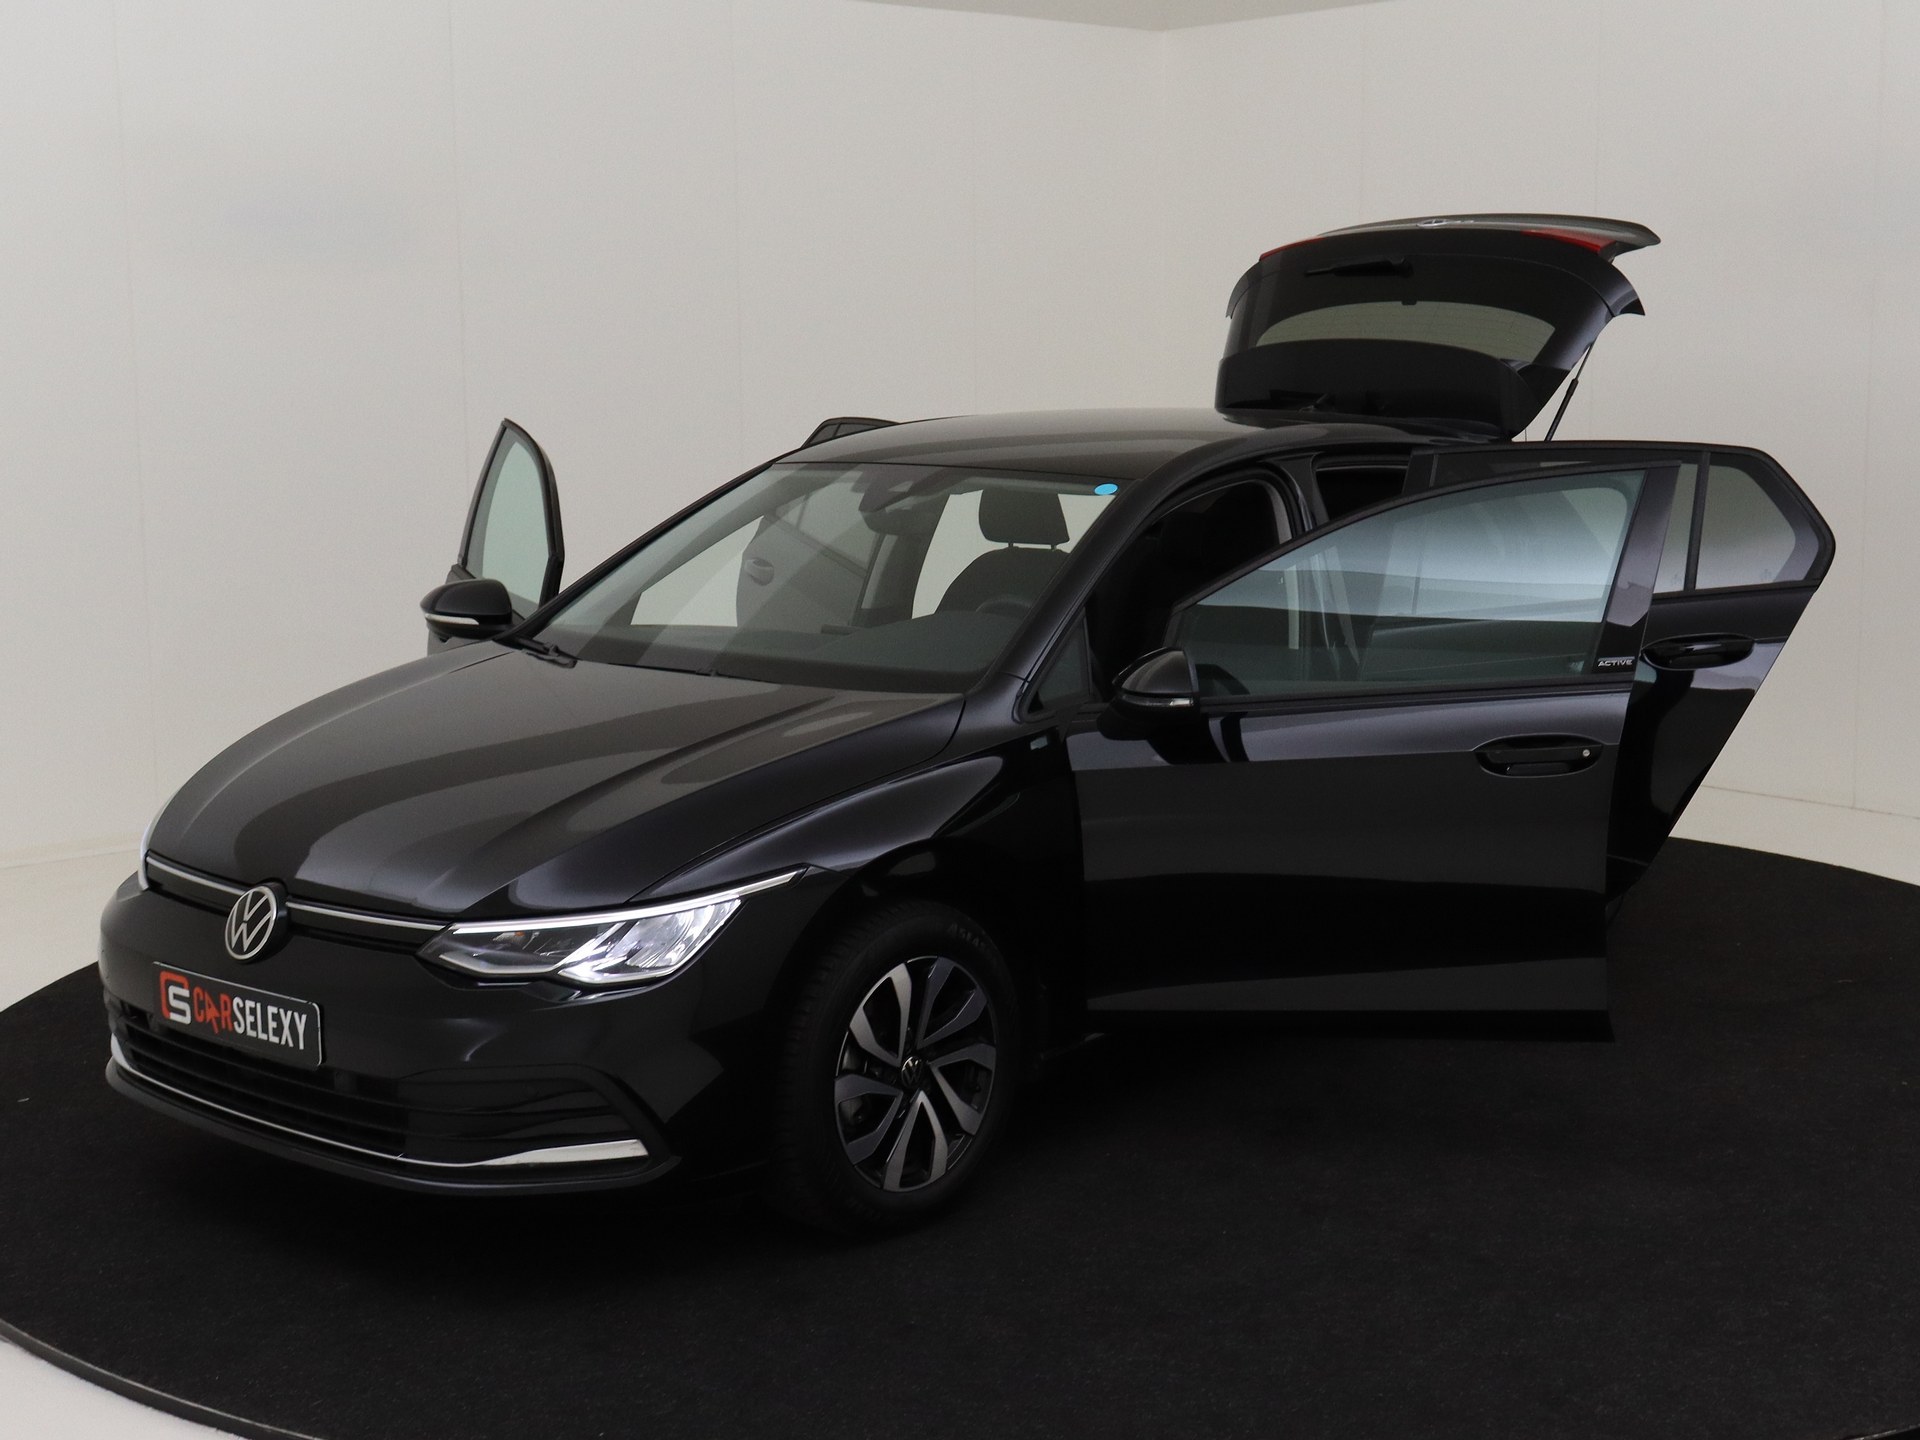 Volkswagen Golf 1.5 TSI Active van CarSelexy dealer Autobedrijf Korterink in Rouveen